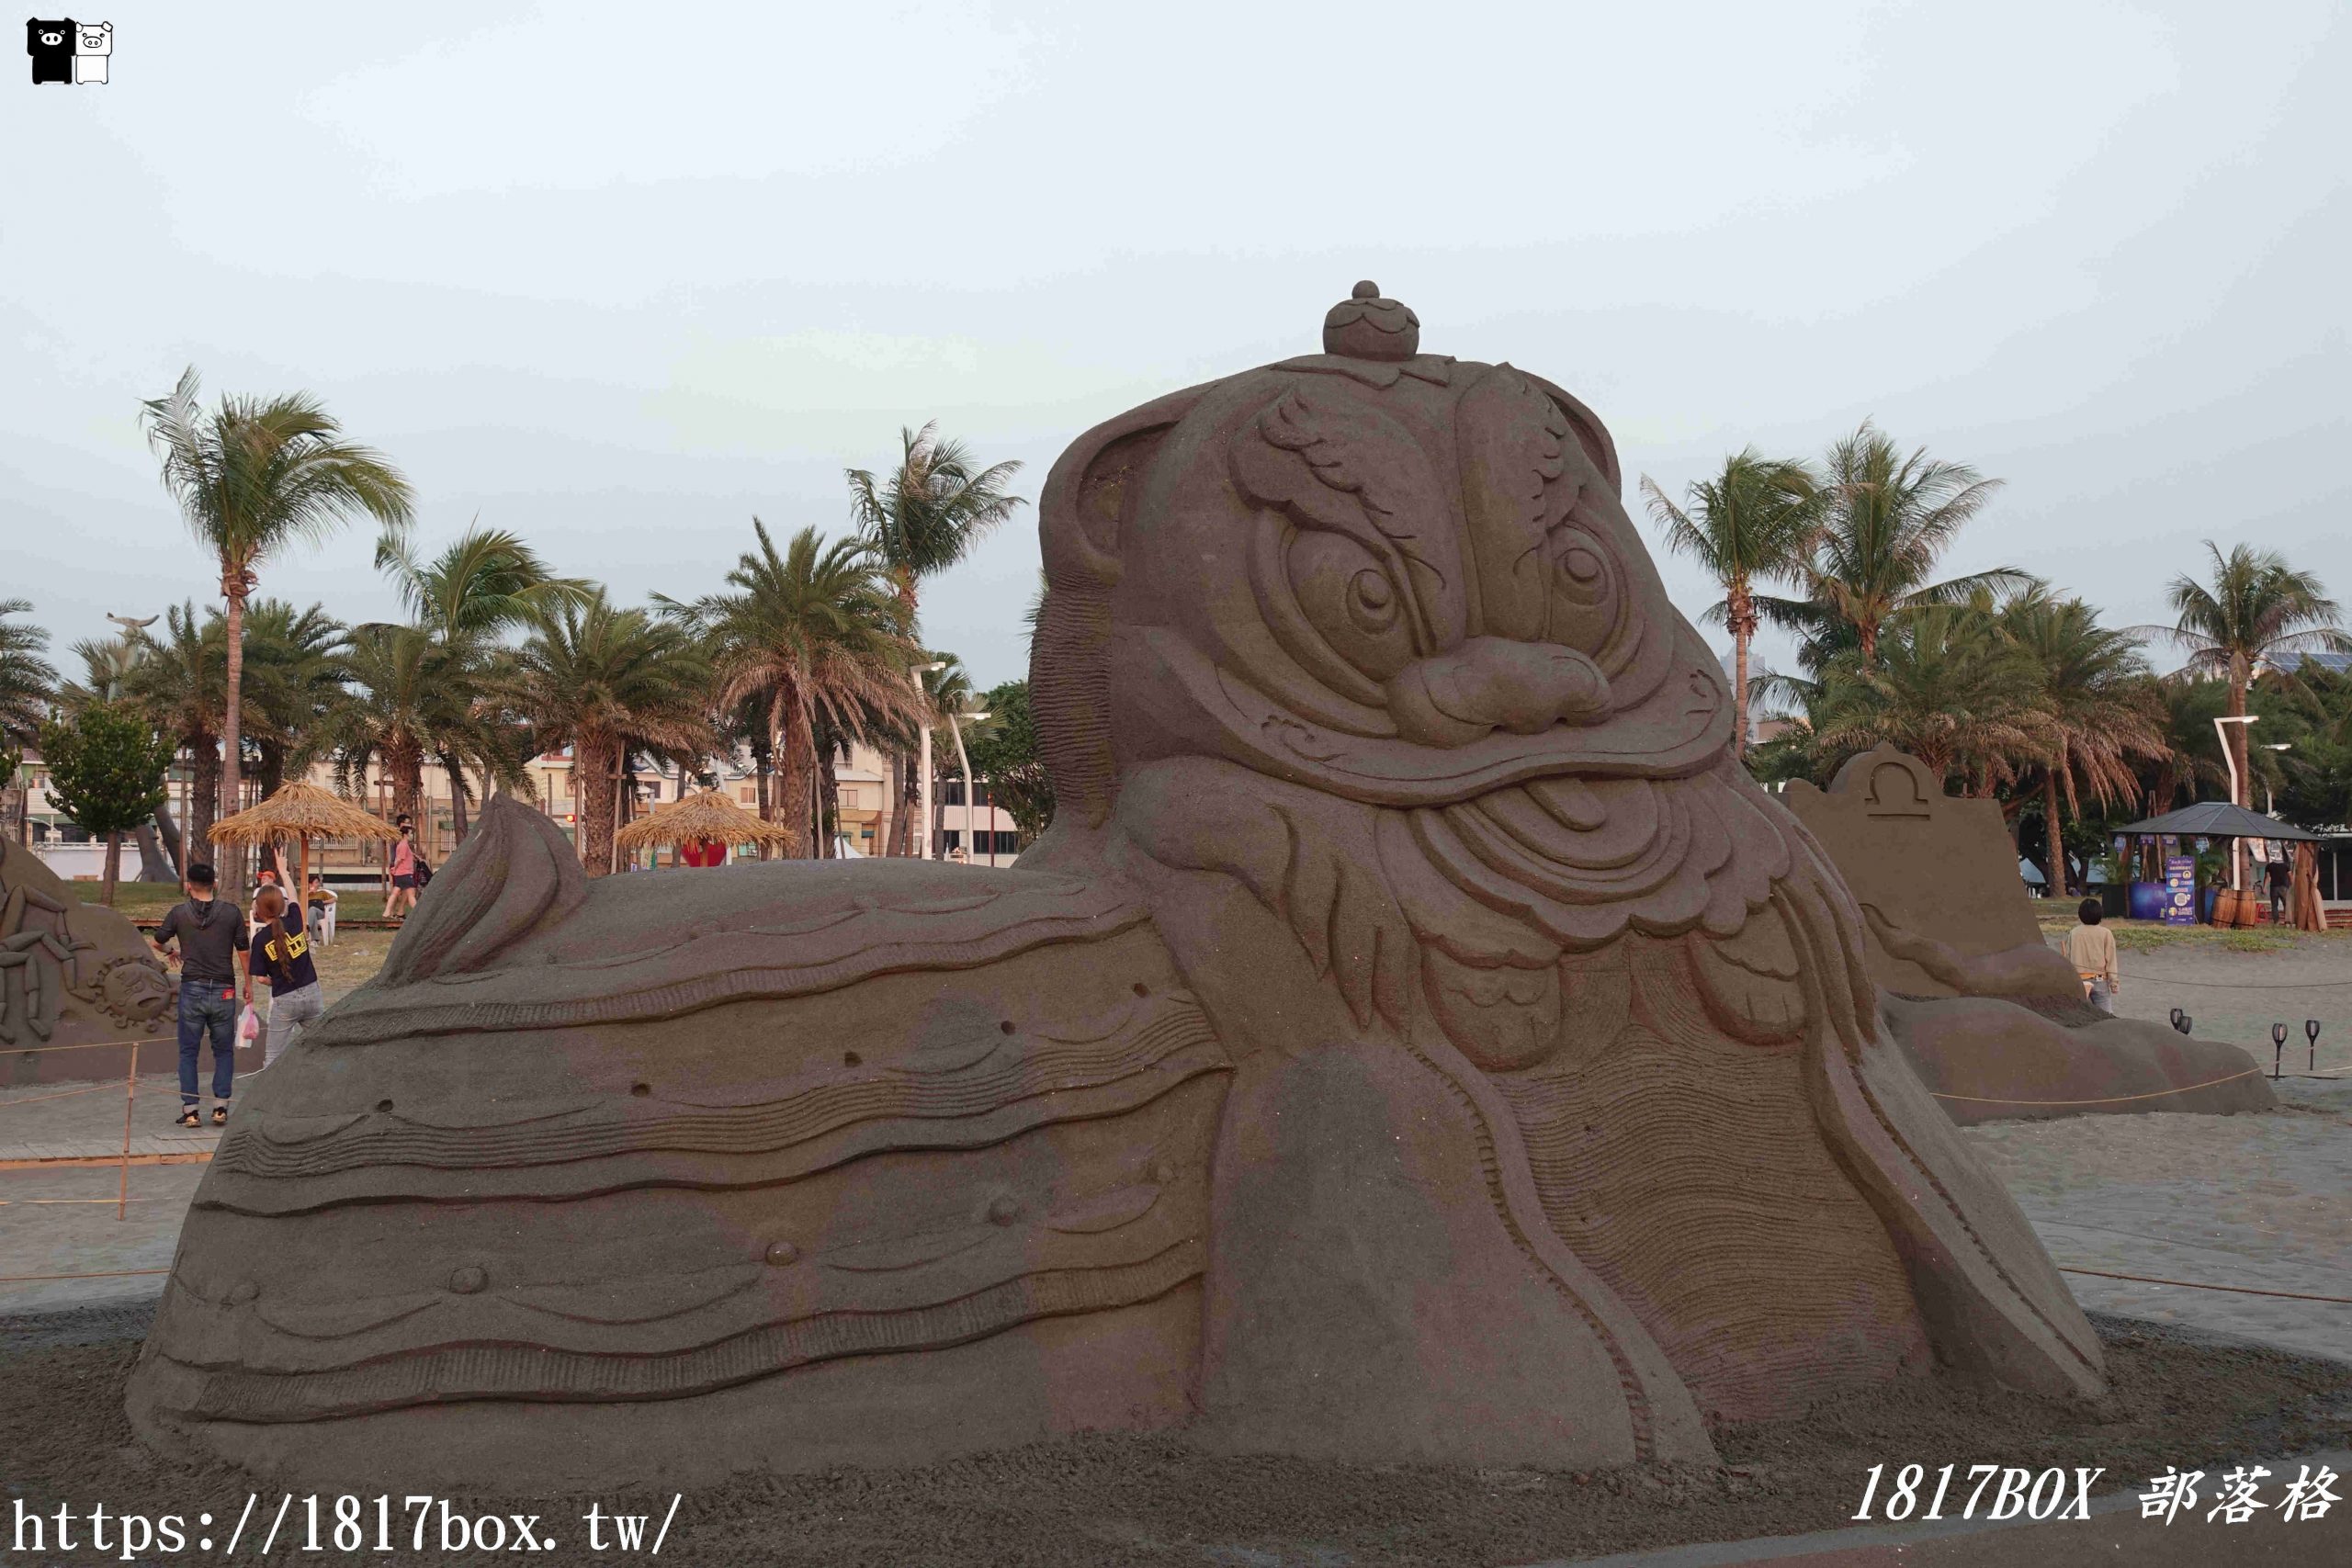 【高雄。旗津】2021旗津黑沙玩藝節。以「星沙傳奇」為主題的沙雕藝術展。打造超過6米高的「太空騎鯨」巨型主雕及12星座主題沙雕